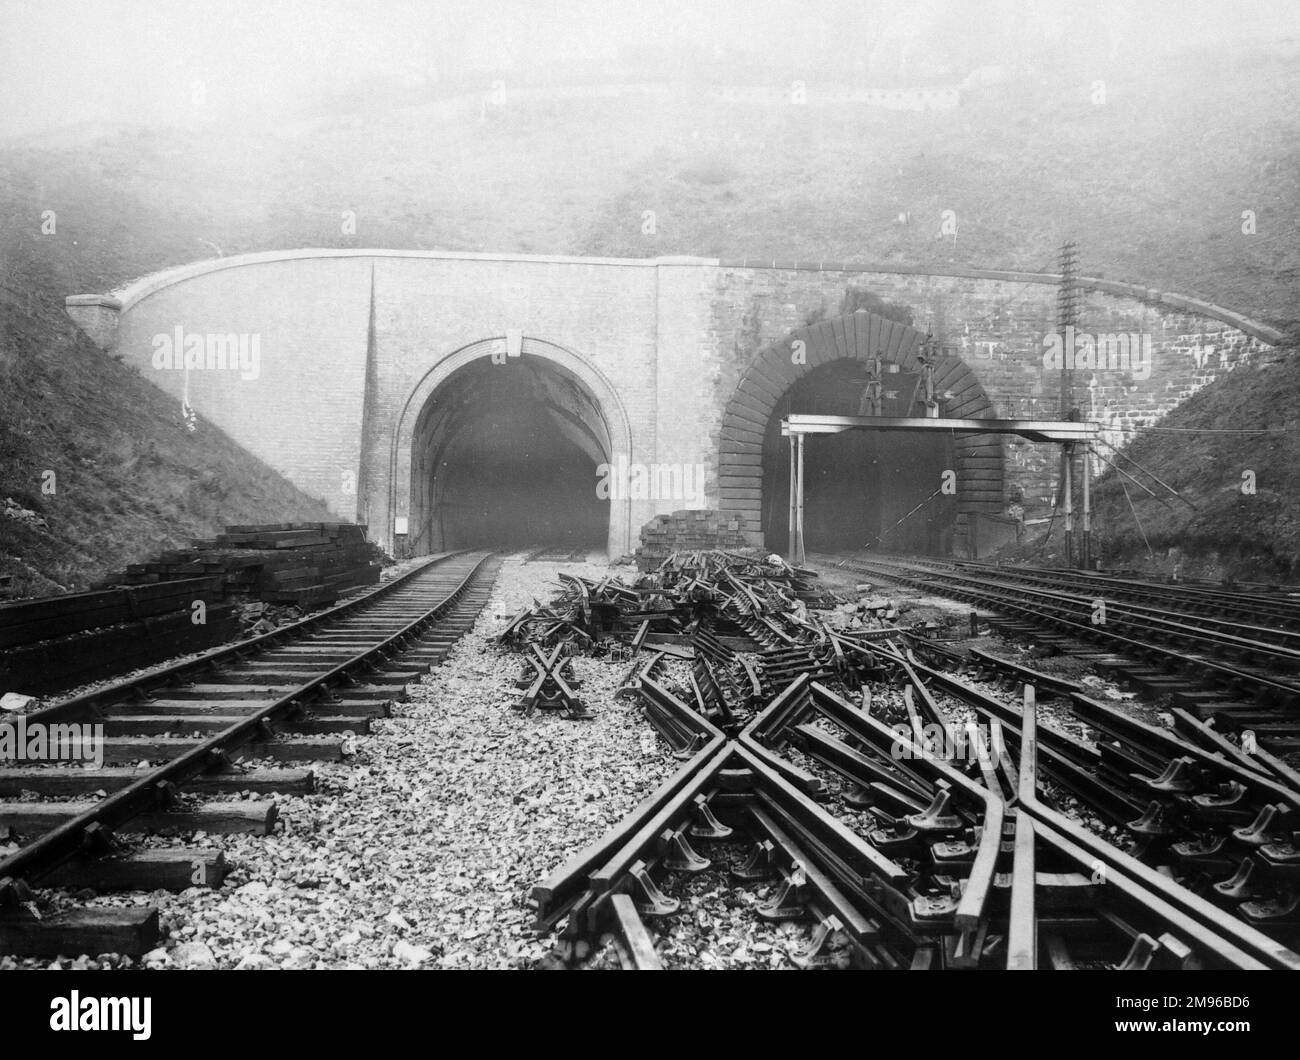 Fertigstellung der neuen Bohrung (links) des Newport-Tunnels auf der Great Western Railway in der Nähe der Stadt Newport, Monmouthshire, Gwent, Südwales. Der Tunnel auf der rechten Seite wurde von Brunel entworfen und 1852 fertiggestellt. Der große Raum zwischen den Schienen ist voller Ersatzschienen. Stockfoto